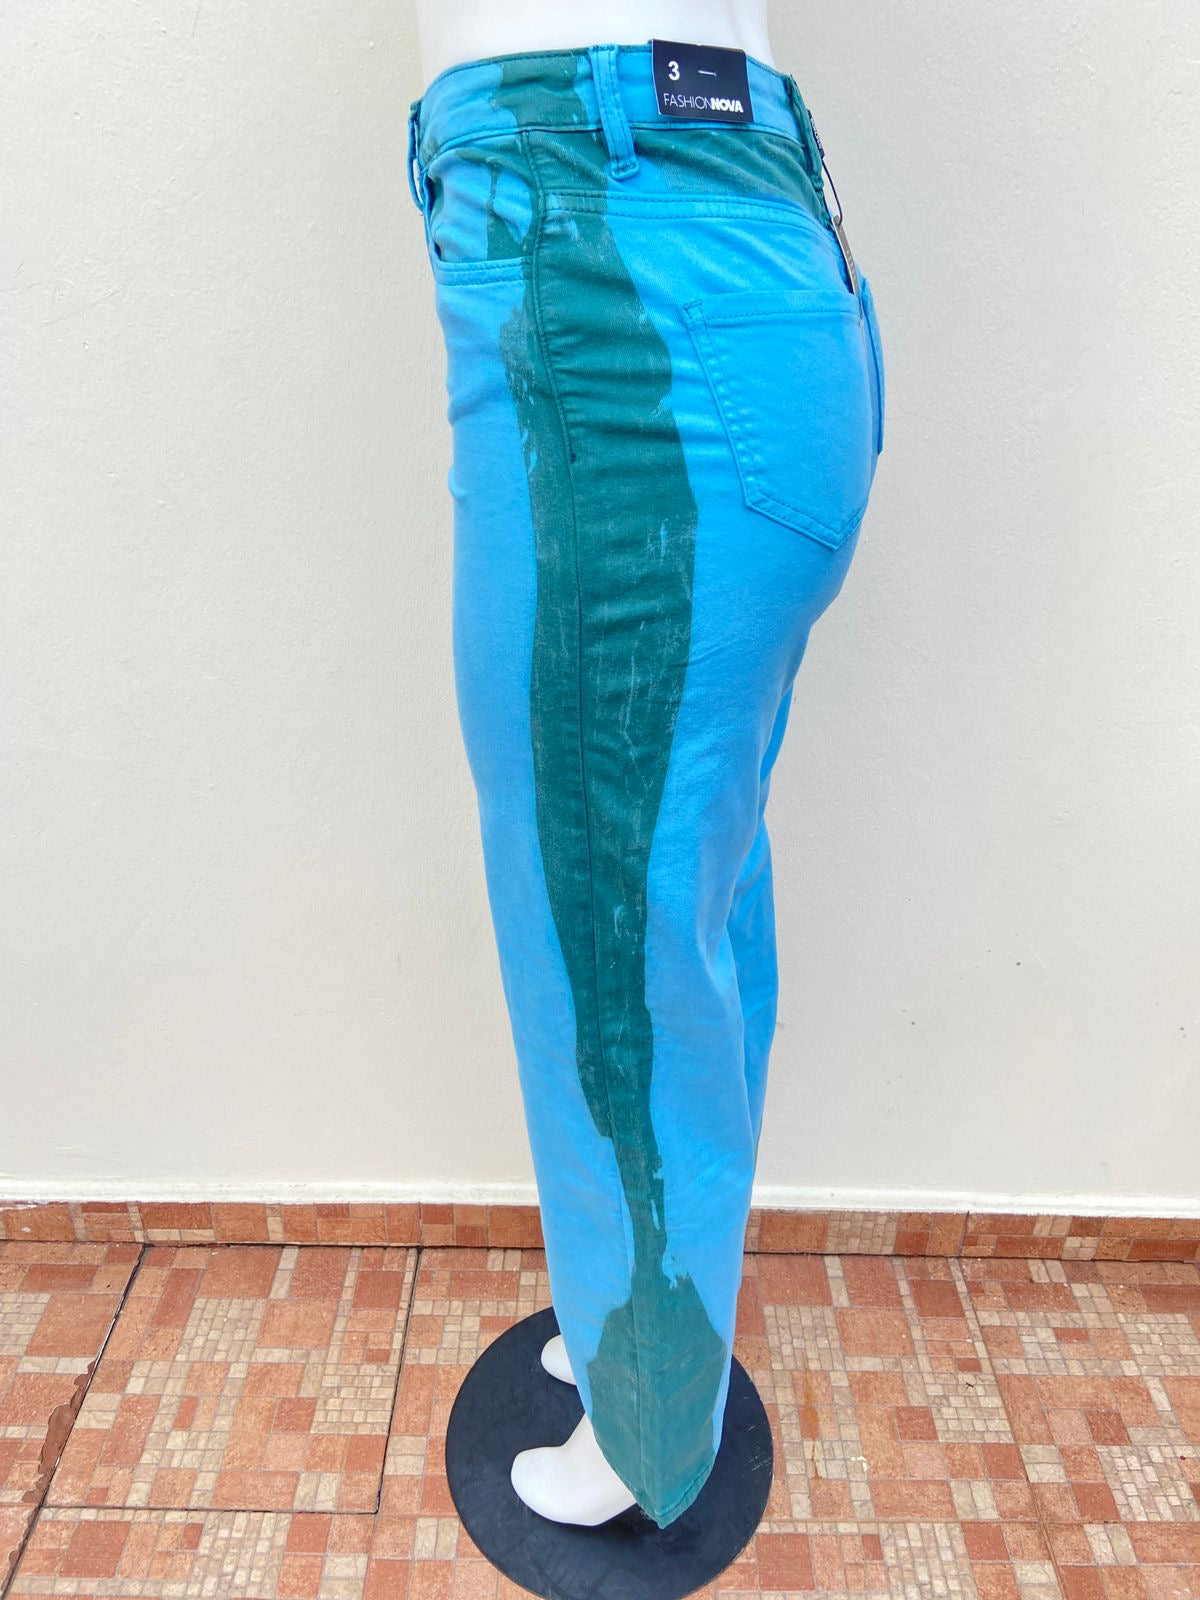 Pantalón jean Fashion nova original color azul con degradado verde